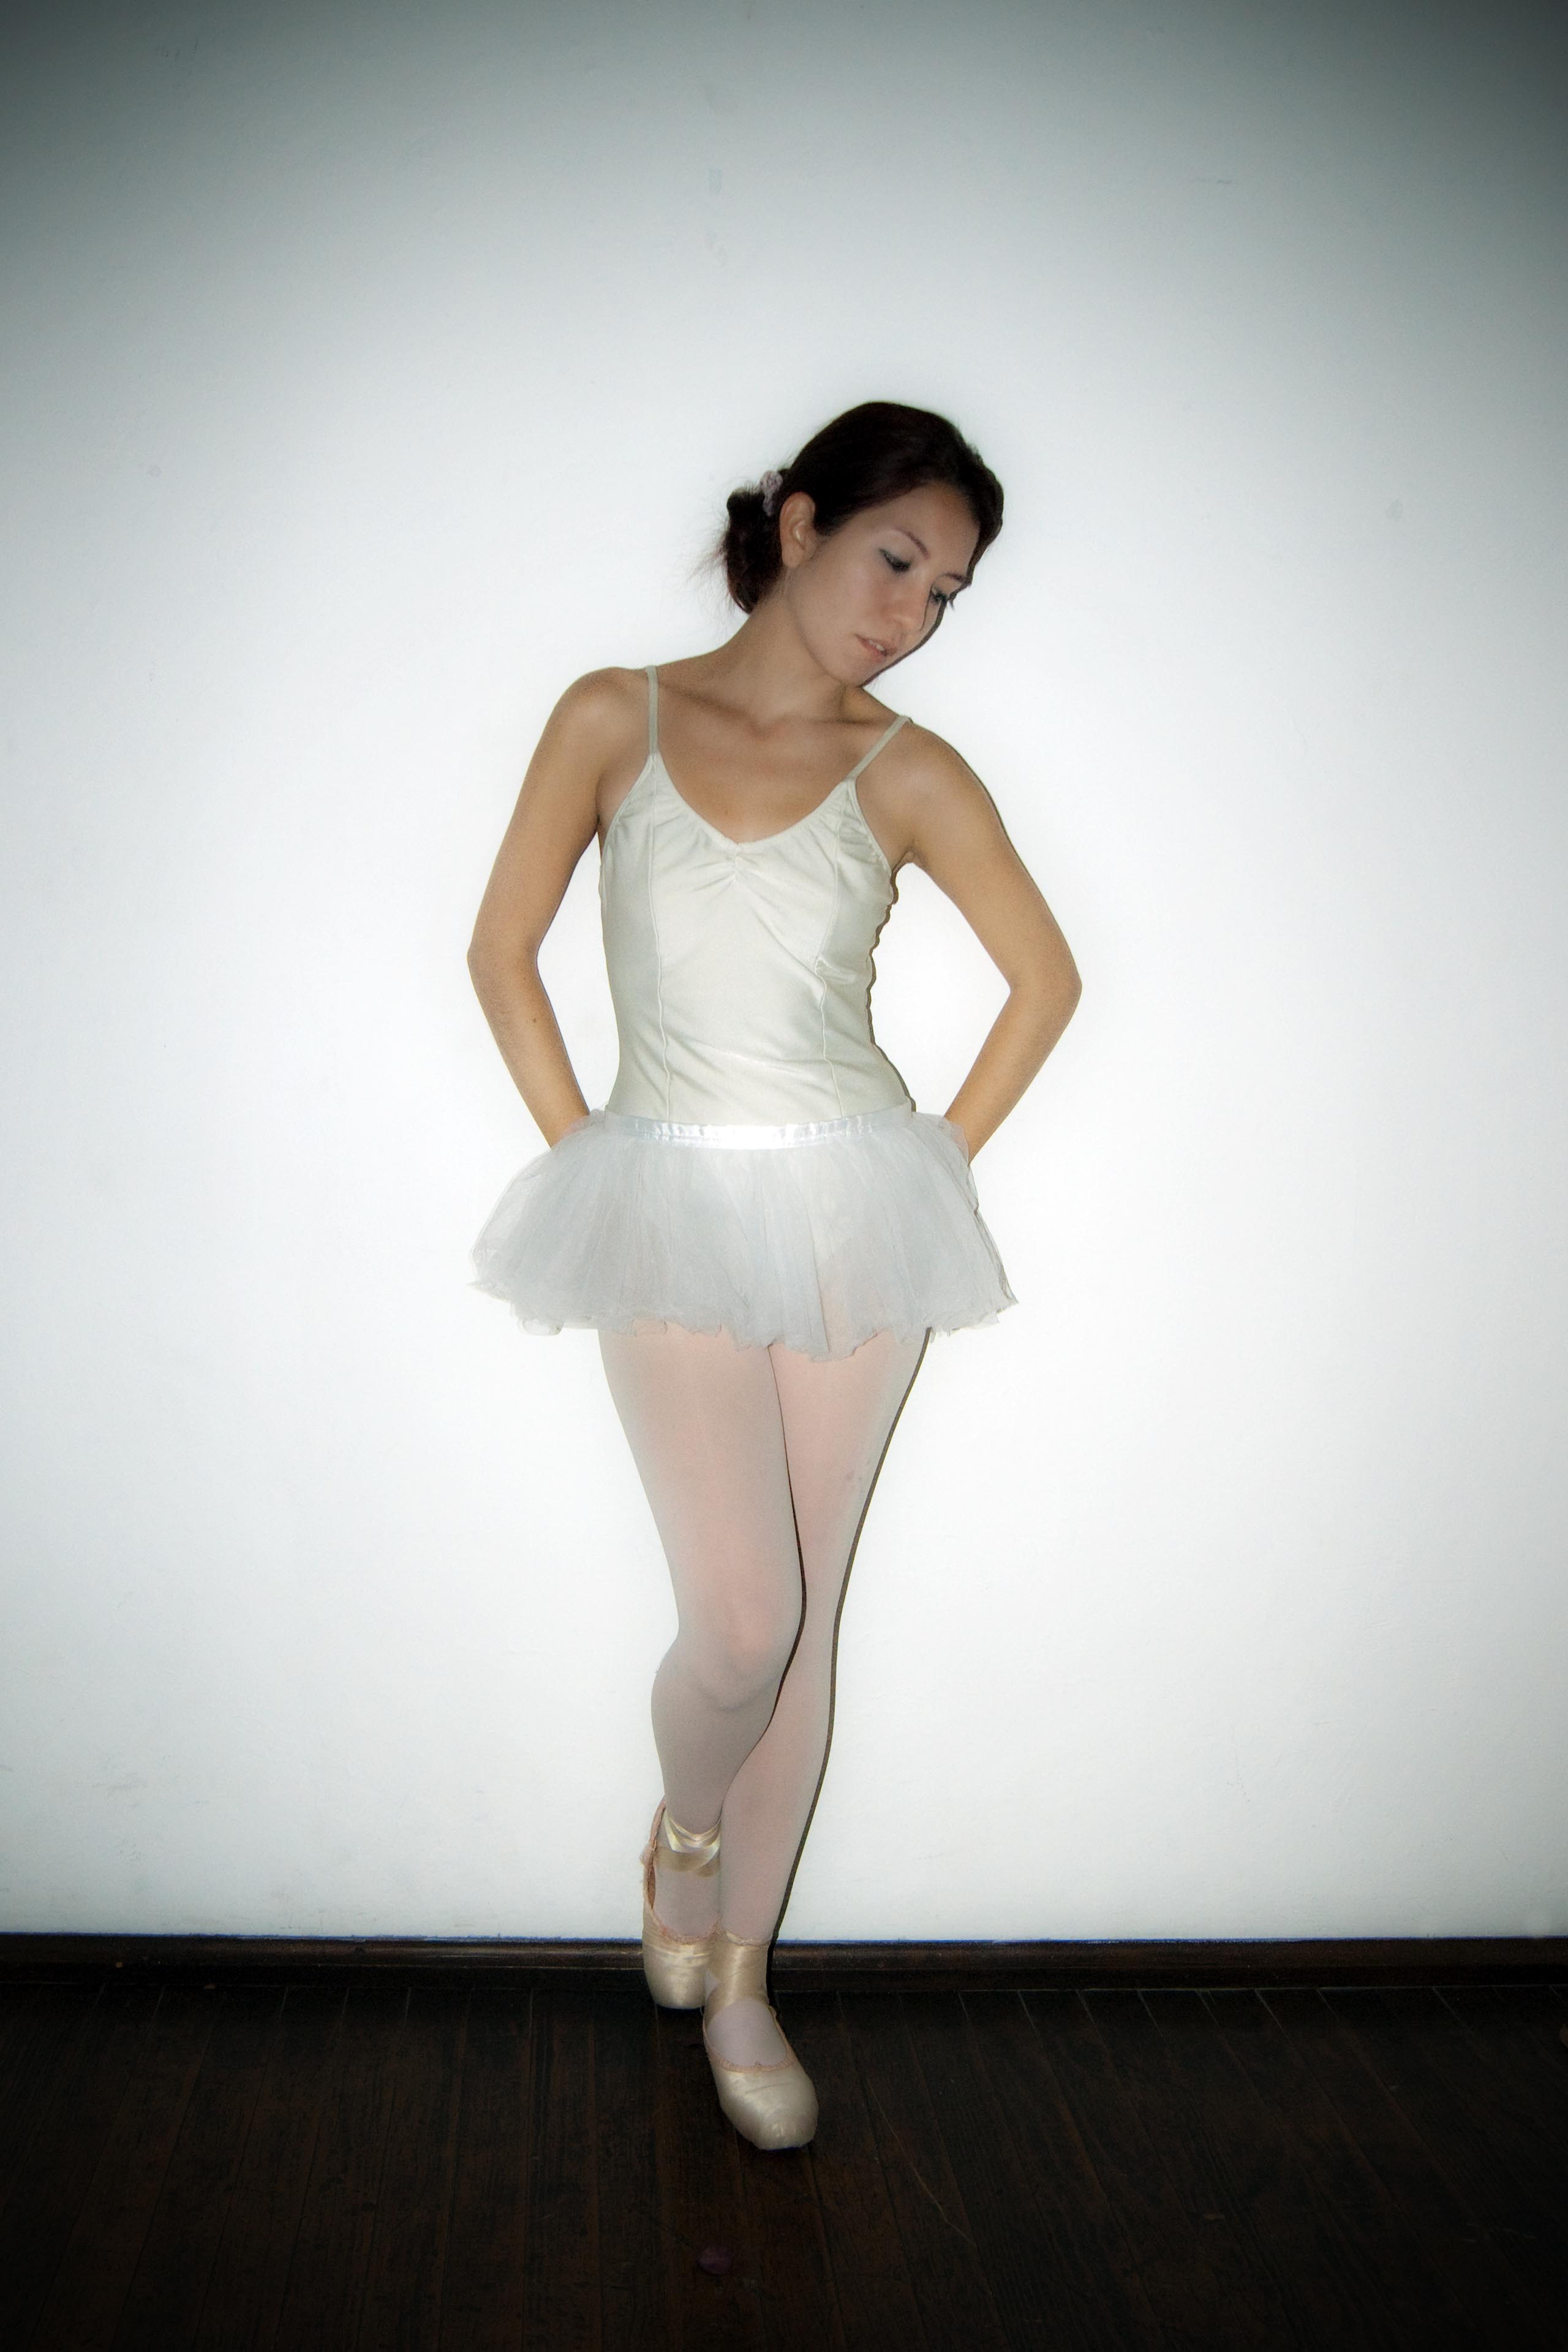 Ballet shoe - Wikipedia